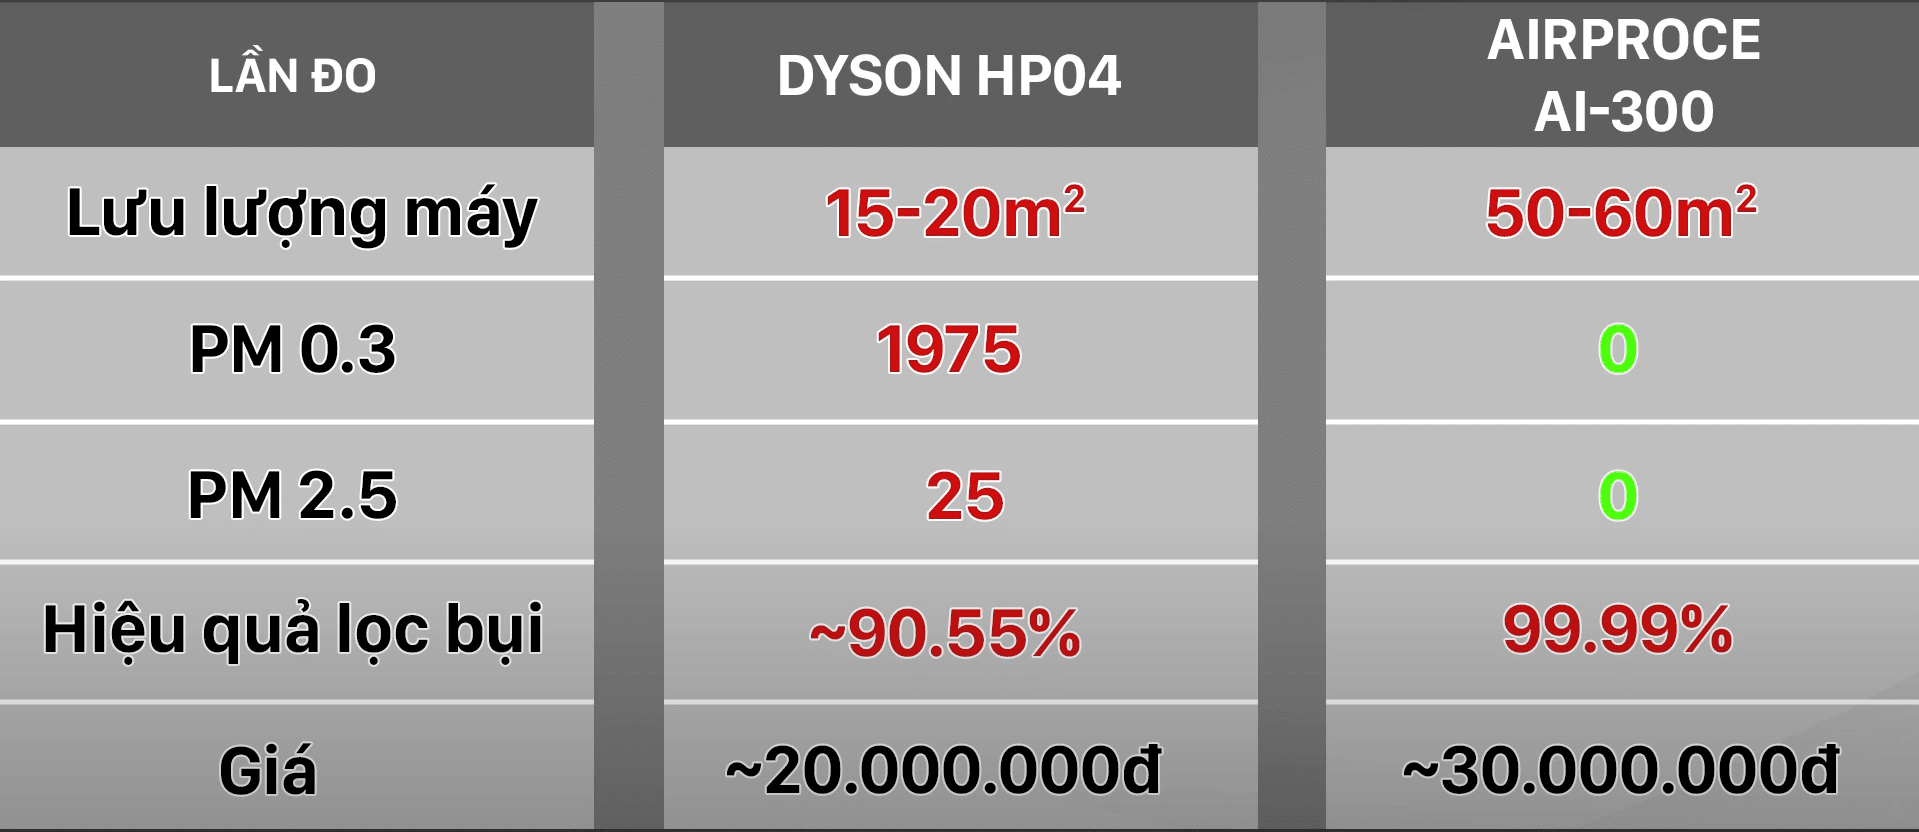 hiệu quả của máy lọc không khí Dyson hp04 và ai-300